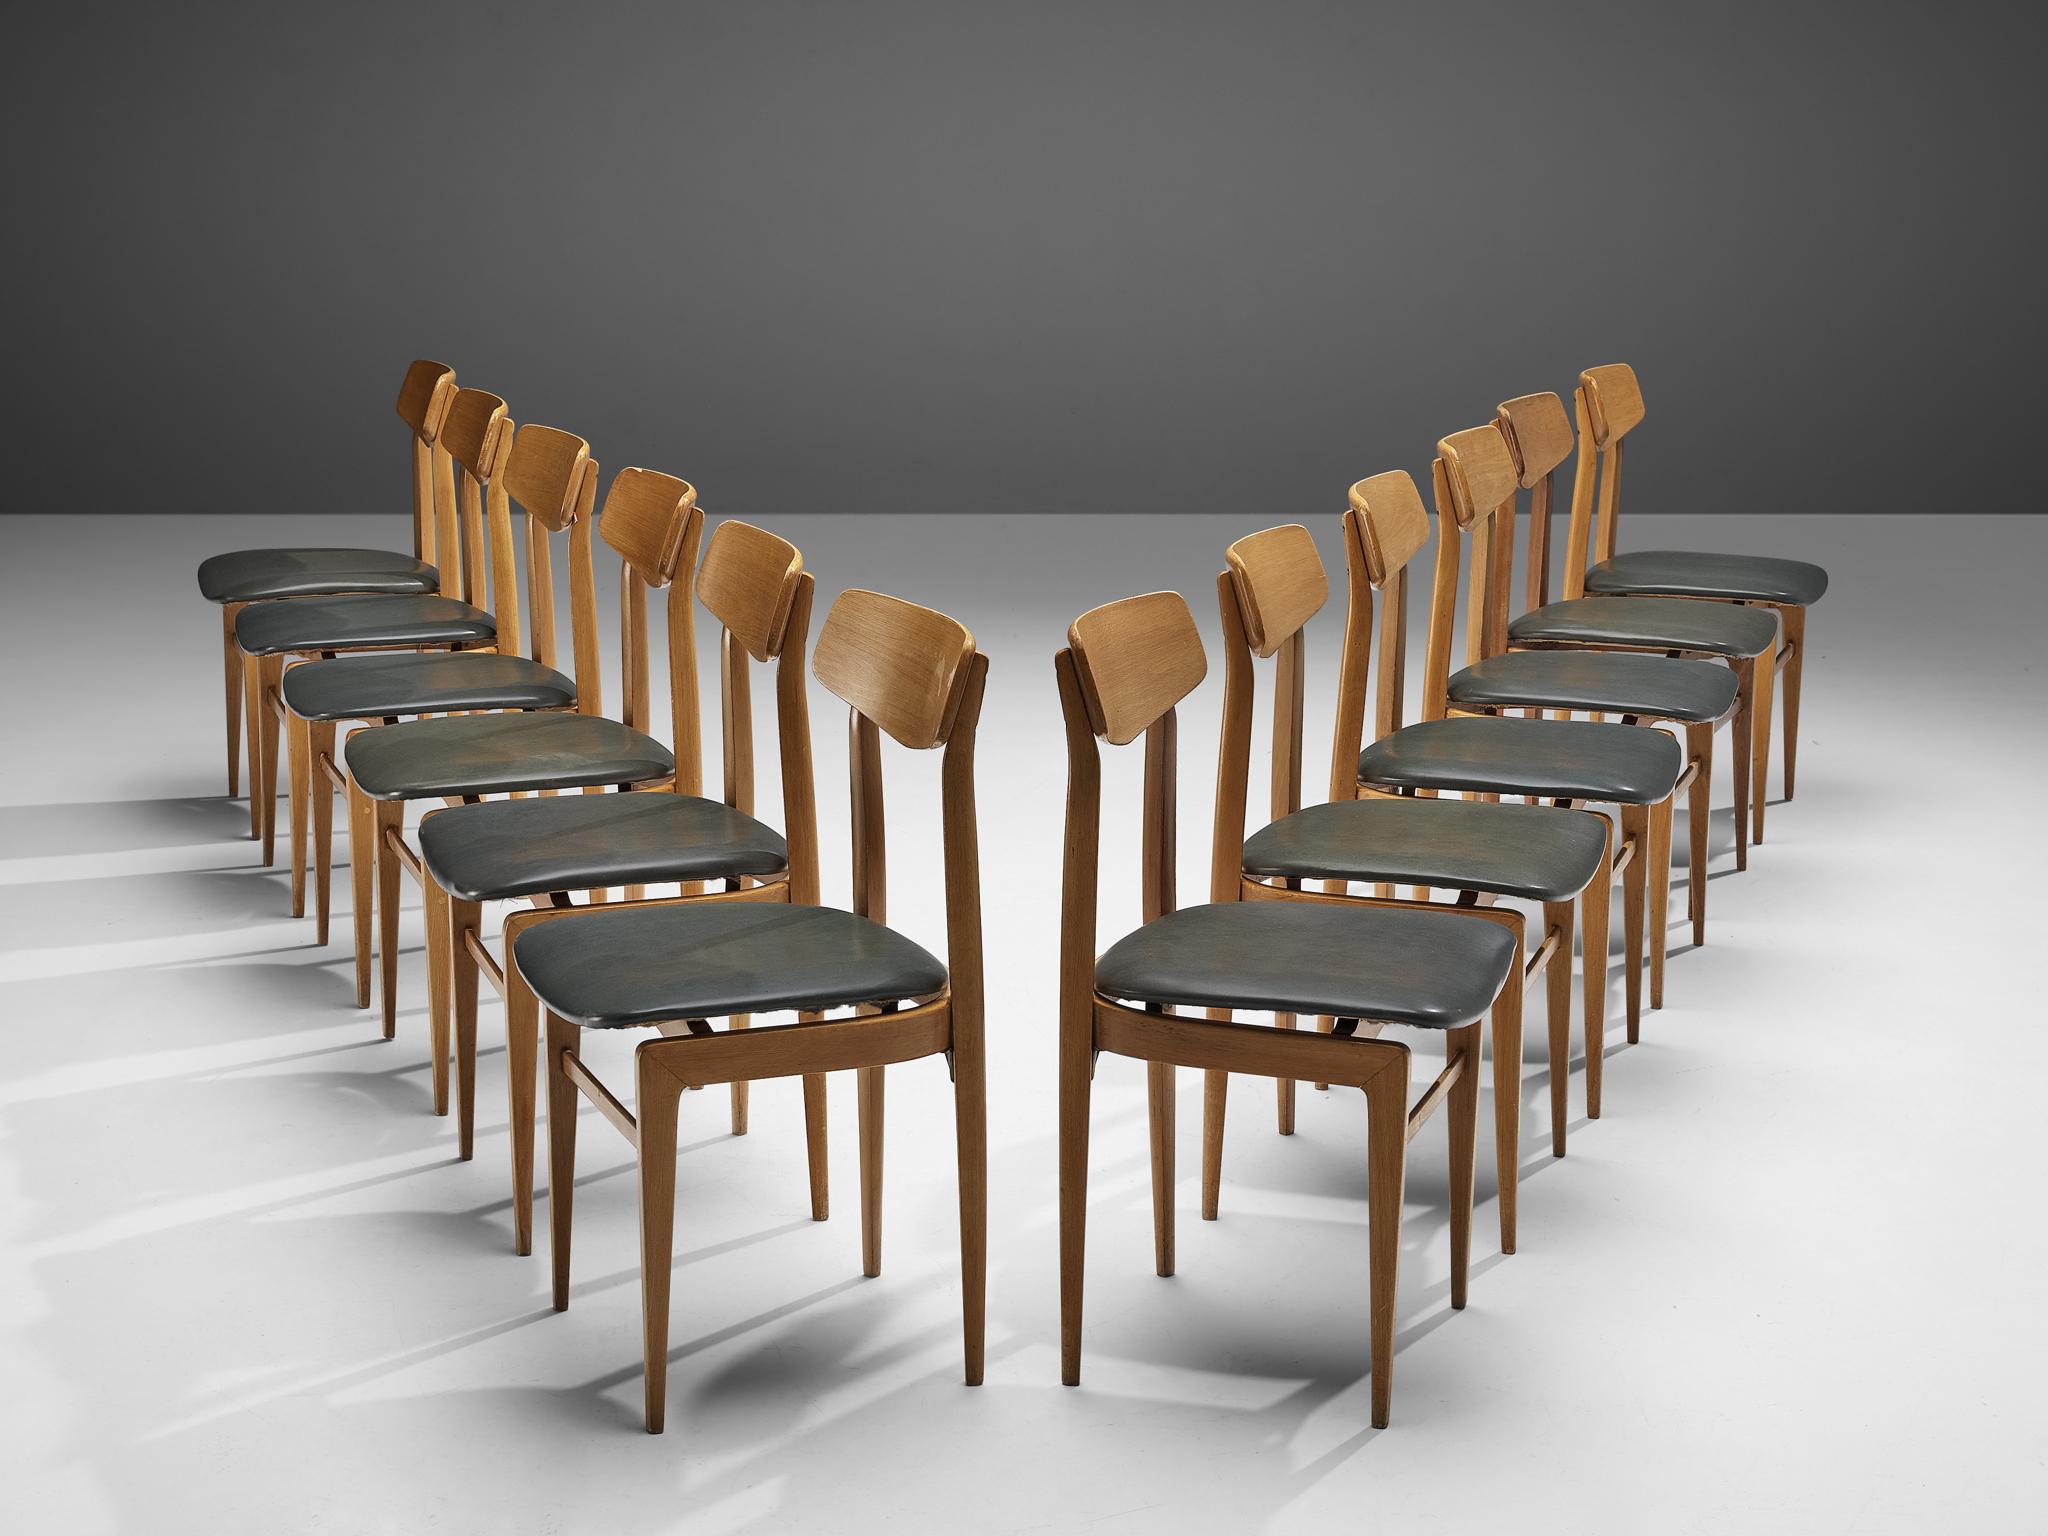 Satz von zwölf Stühlen, gebeiztes Holz, Kunstleder, Dänemark, 1960er Jahre 

Äußerst elegante Stühle, die an einem Ess- oder Konferenztisch eine gute Figur machen. Die scharf geformte Rückenlehne wird von zwei Säulenbeinen getragen, die sich in